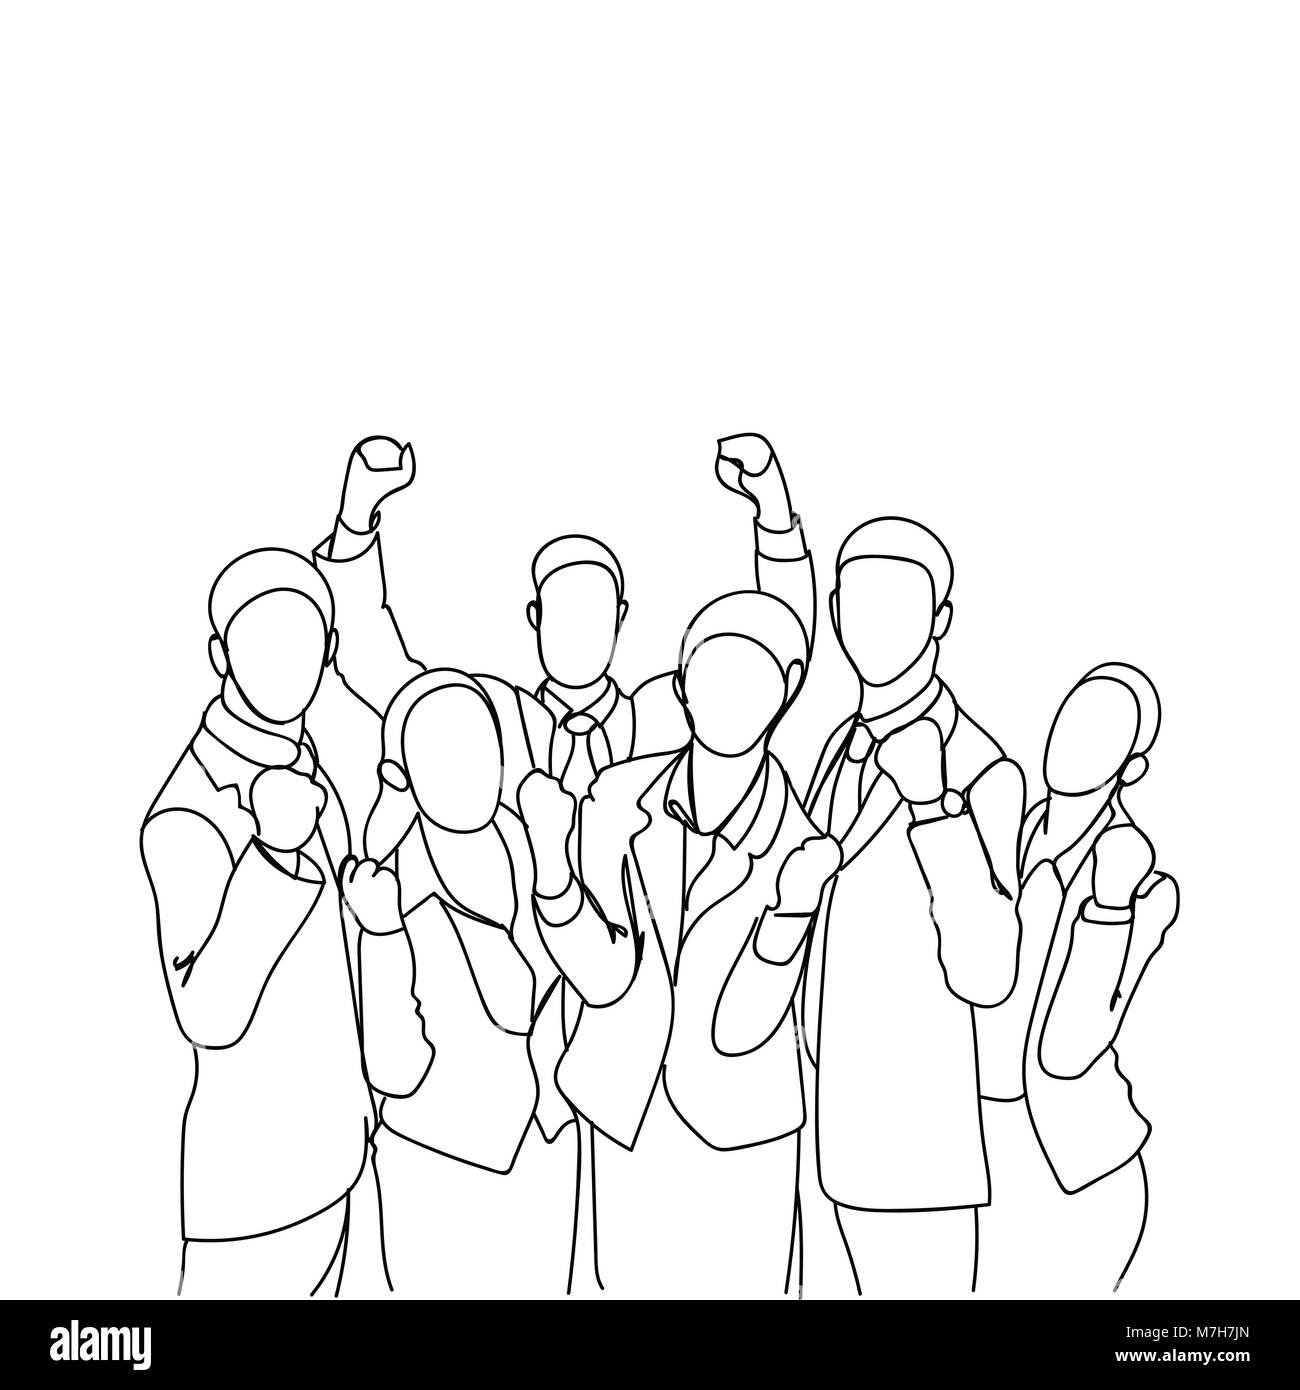 Fröhliche Gruppe von Geschäftsleuten mit erhobenen Händen glücklich Erfolgreiches Team Doodle Silhouetten Stock Vektor